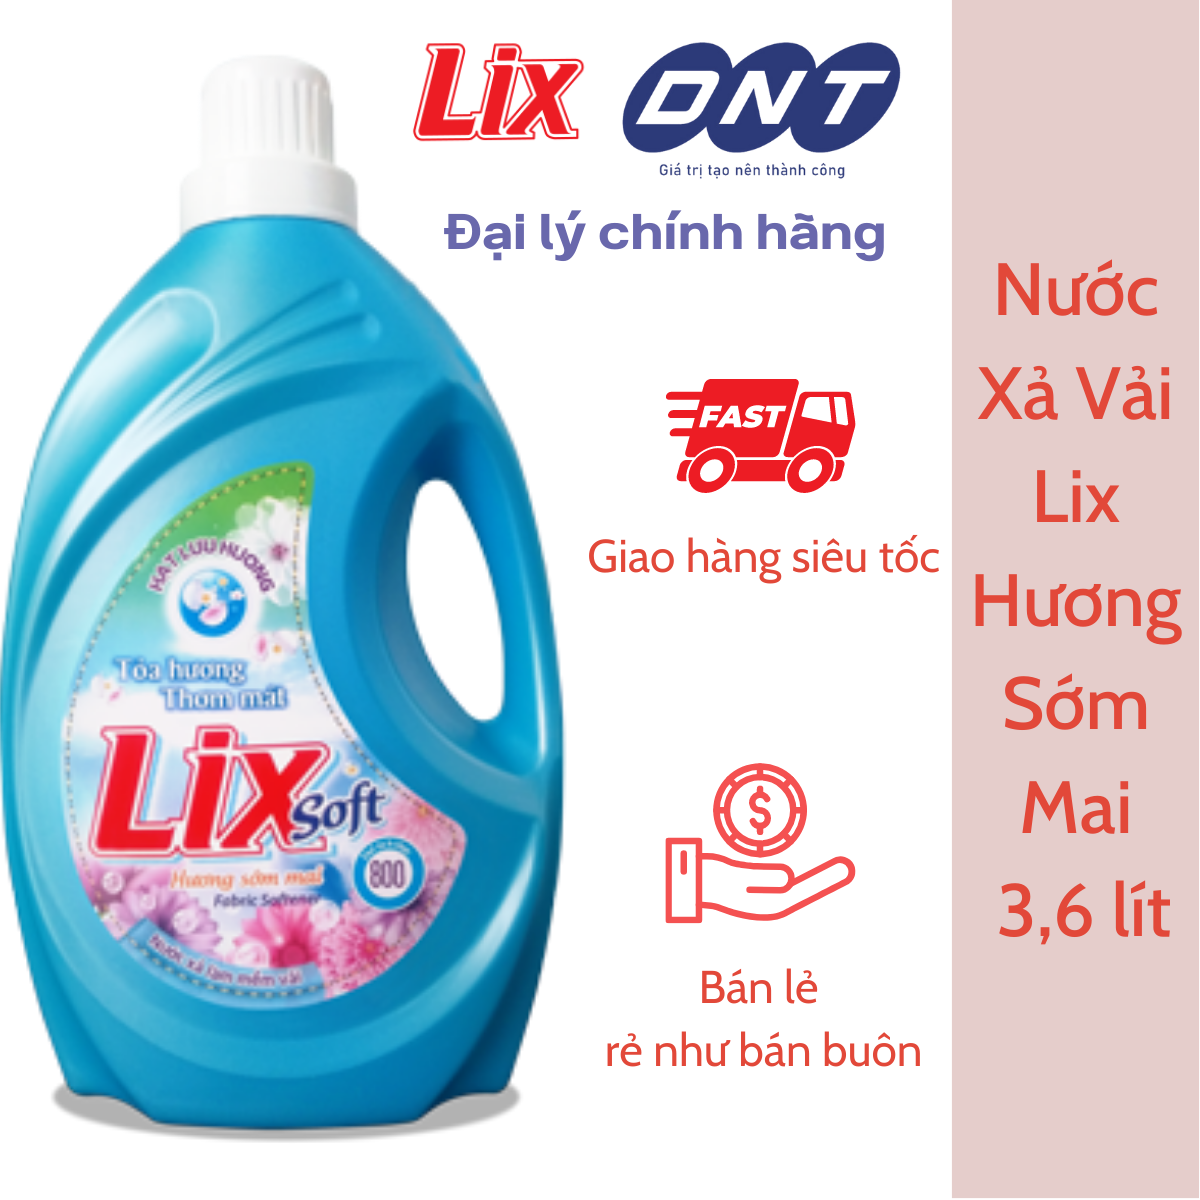 Nước Xả Vải LIX Soft Hương Sớm Mai 3,6 lít - Phân phối Chính hãng